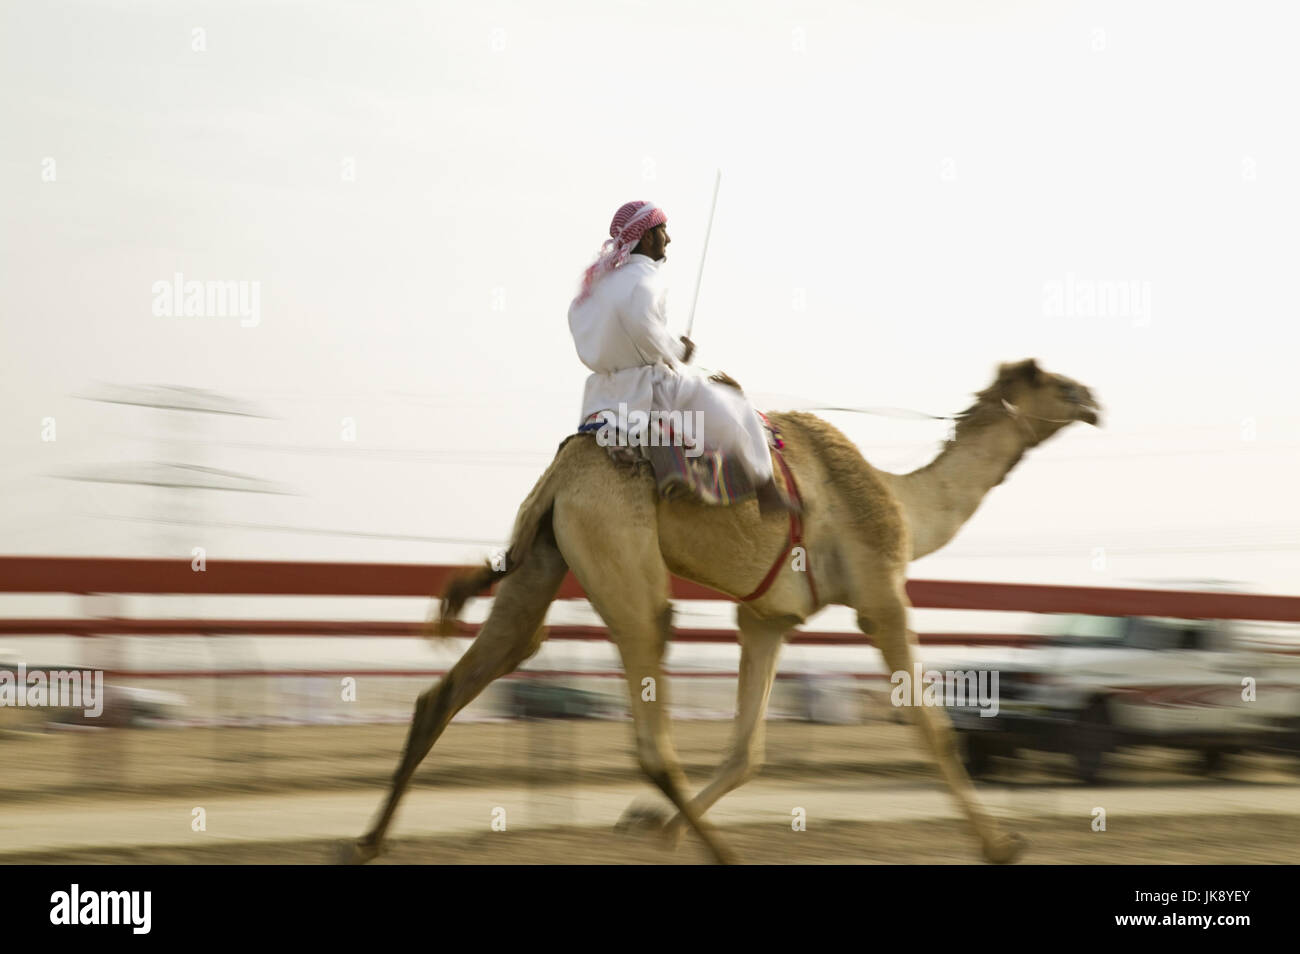 Vereinigte Arabische Emirate, Dubai, Al-Marqadh, Kamelrennbahn, Rennen, Kamele, Jockey, Unschärfe, nessun modello di rilascio, Foto Stock